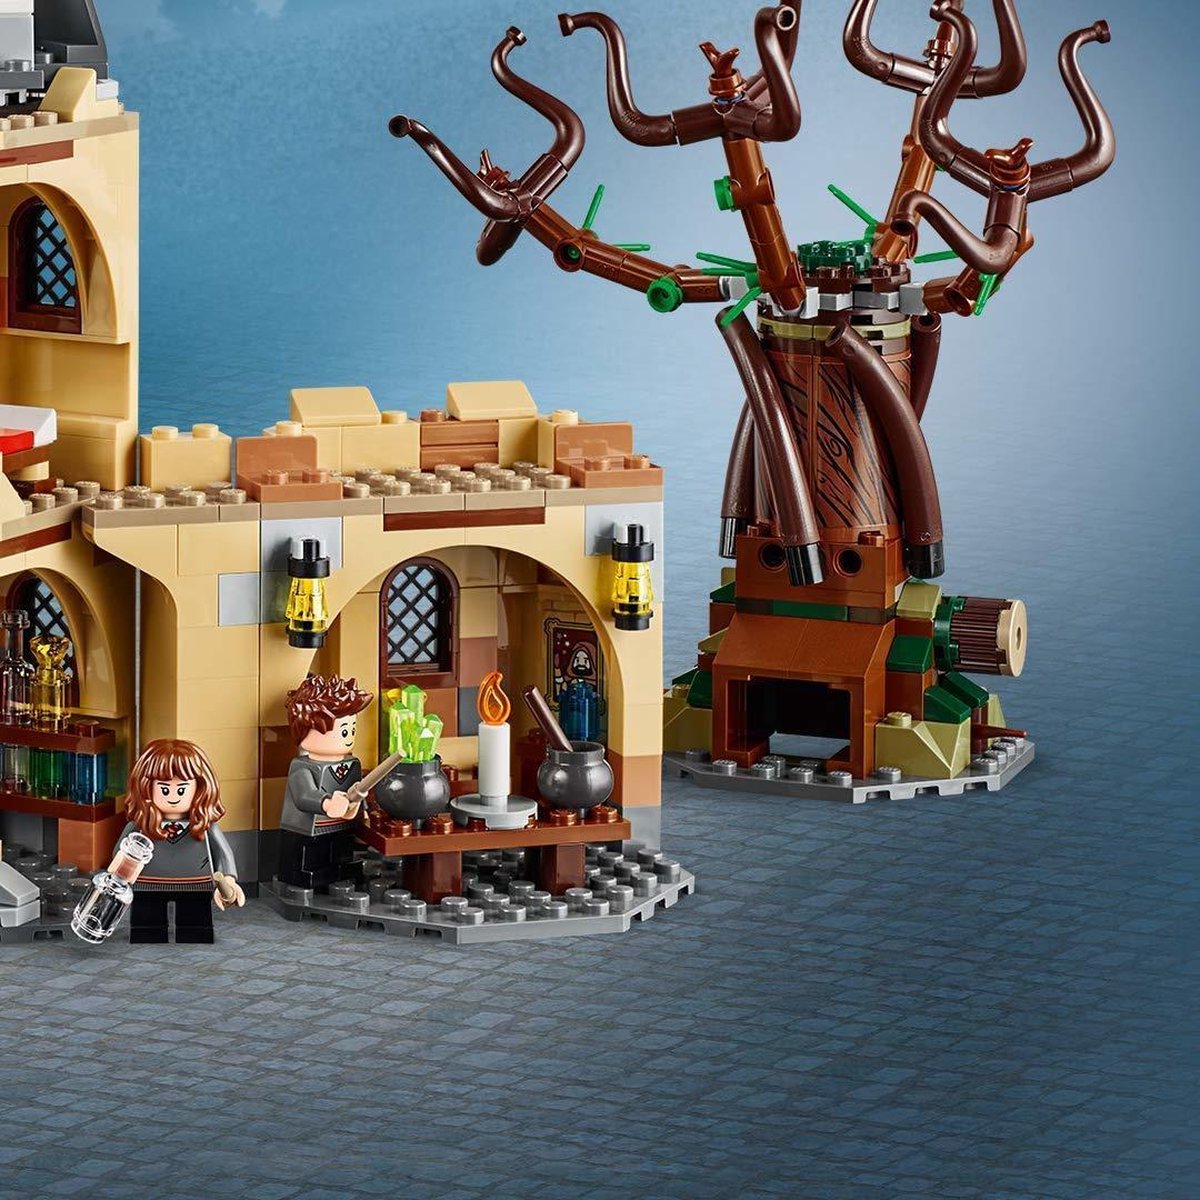 LEGO 75953 Harry Potter - Le Saule Cogneur Du Château De Poudlard